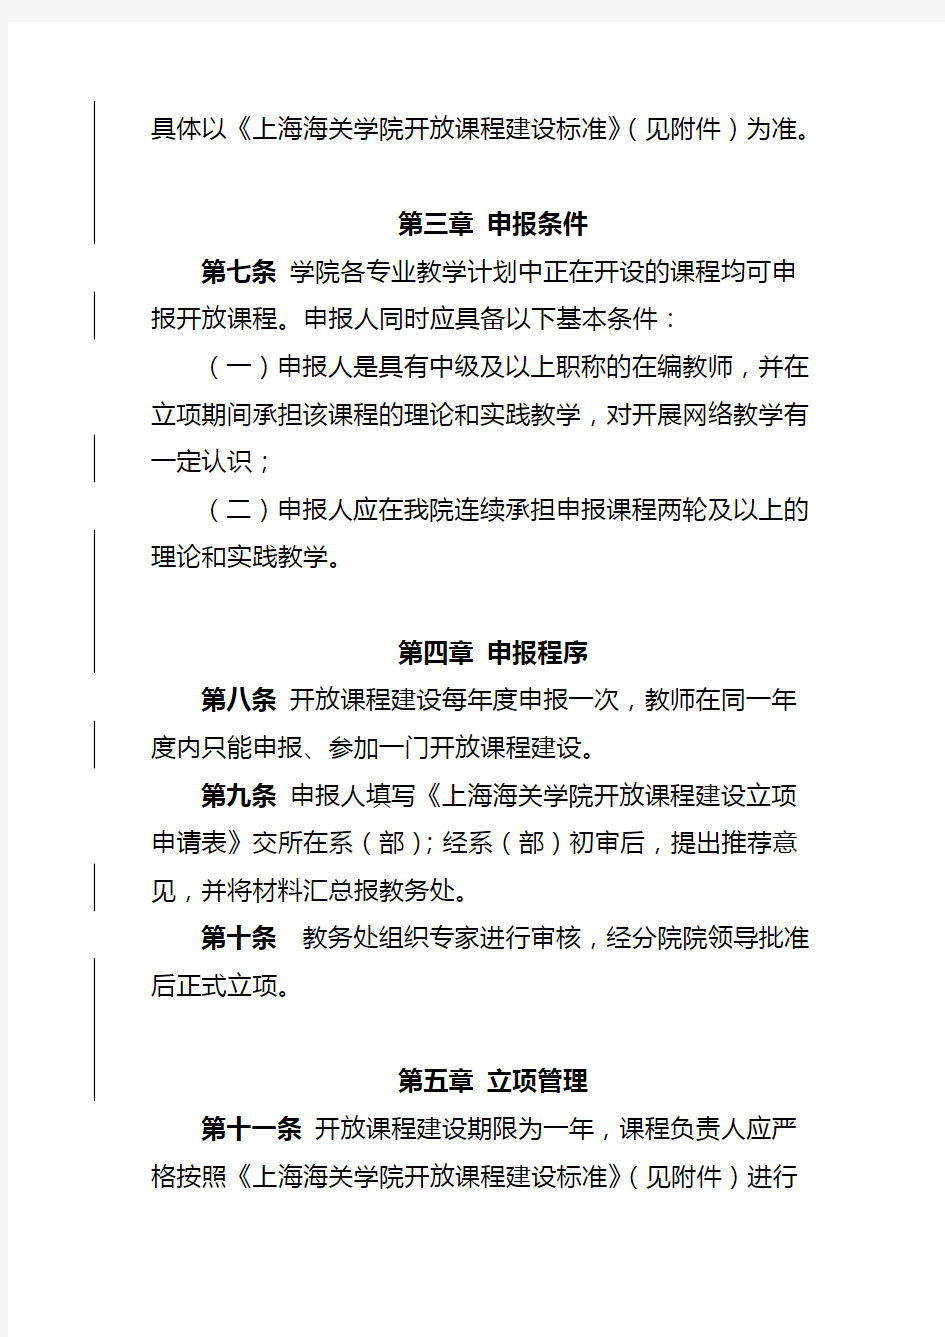 (完整word版)上海海关学院开放课程建设管理办法